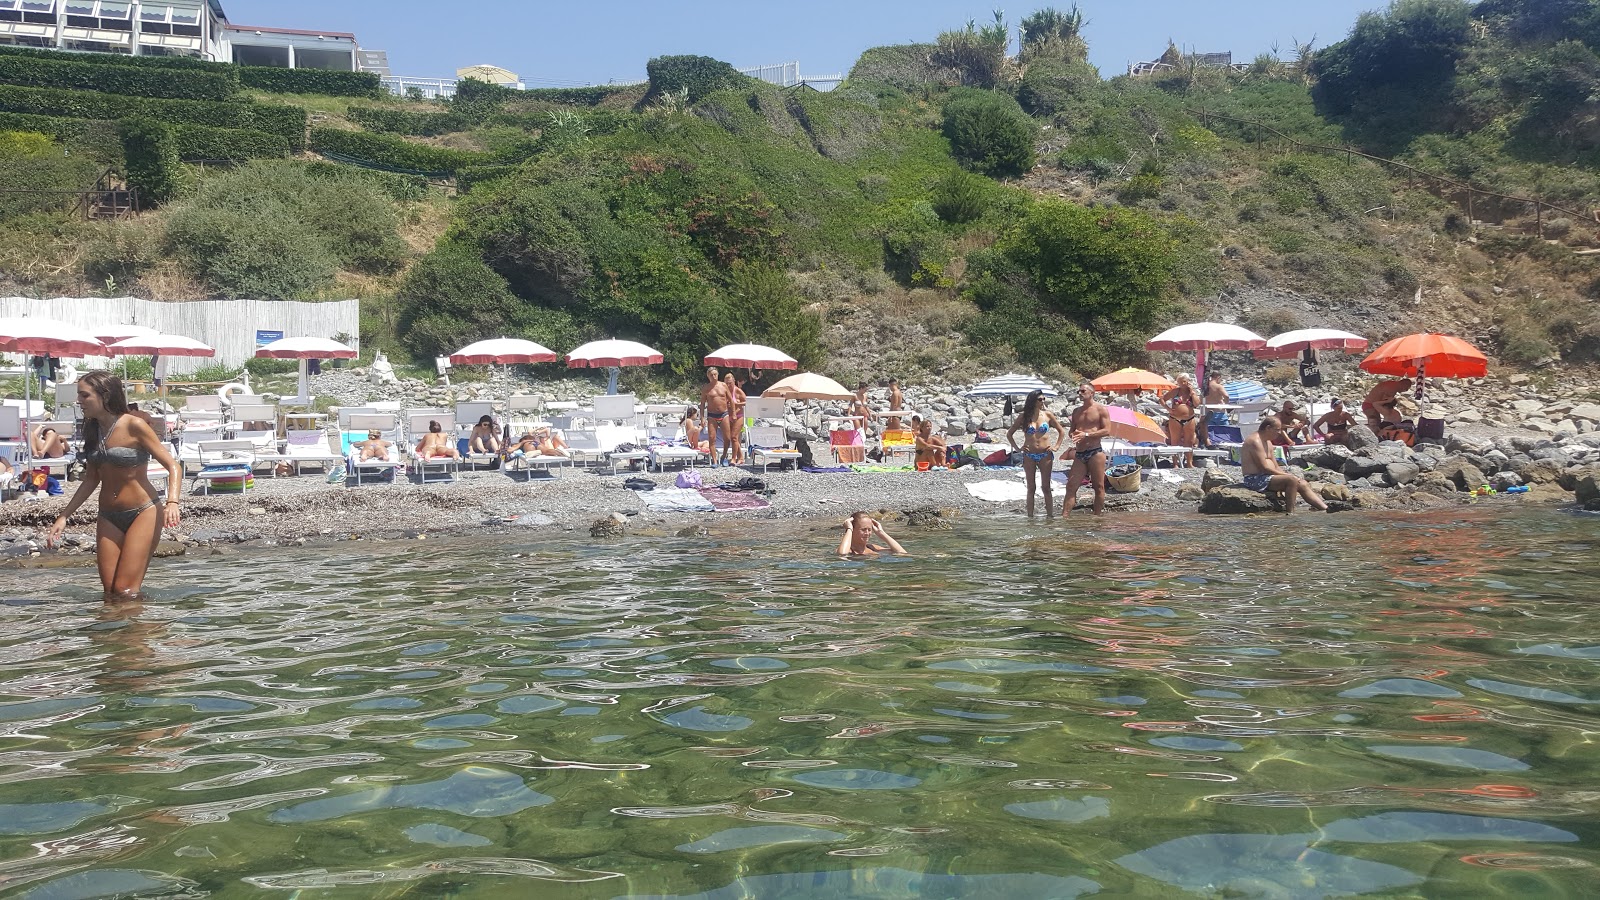 Photo of Spiaggia di Miramare with small multi bays